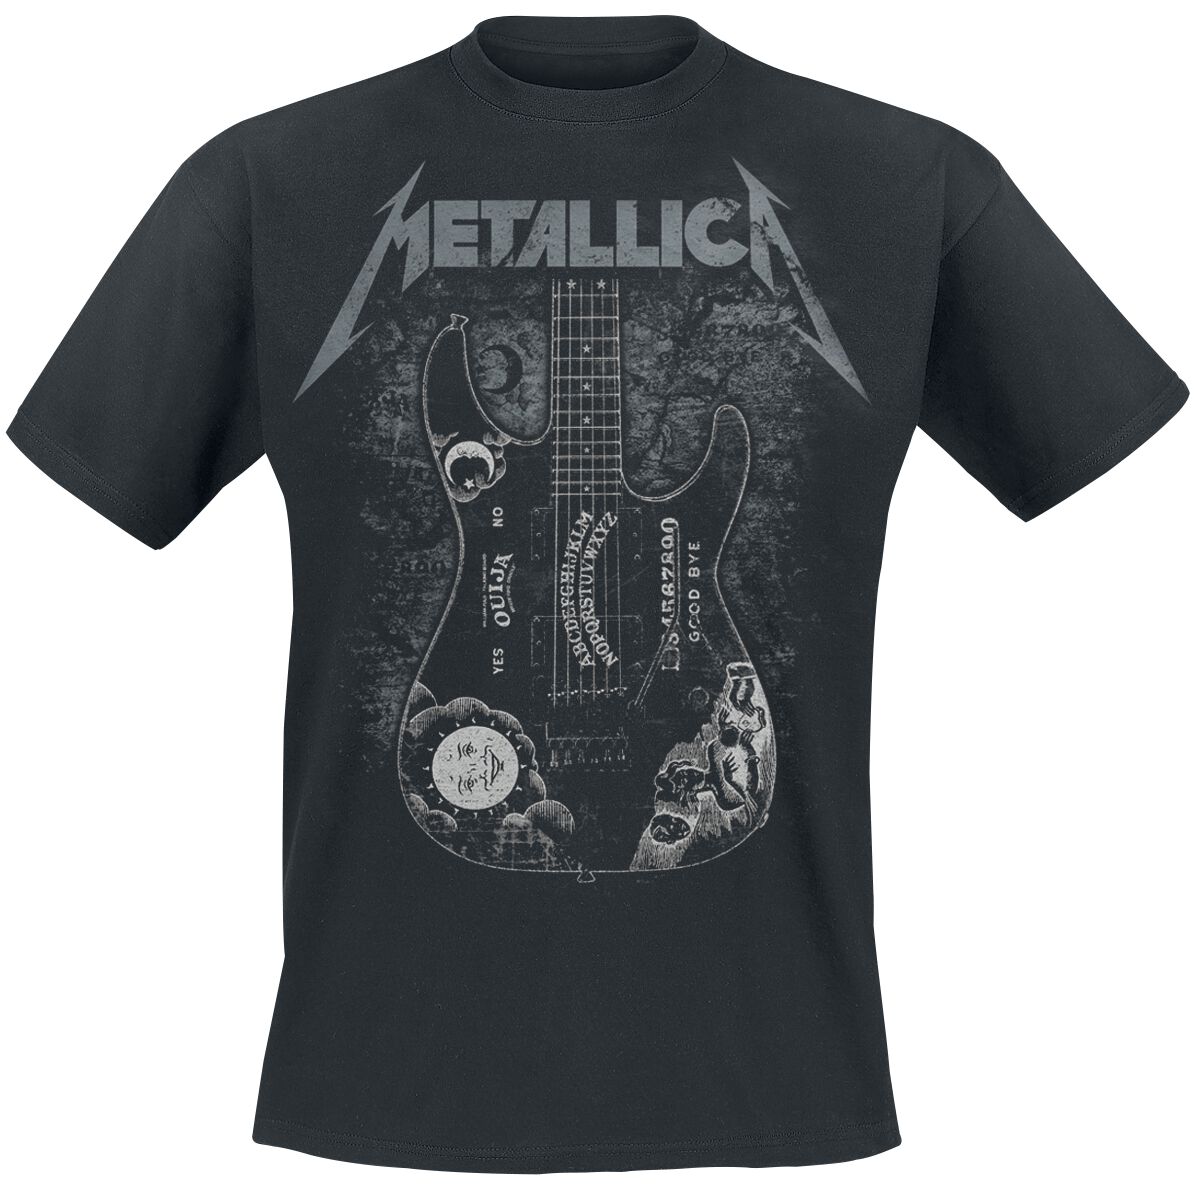 Metallica T-Shirt - Hammett Ouija Guitar - S bis 3XL - für Männer - Größe S - schwarz  - Lizenziertes Merchandise!